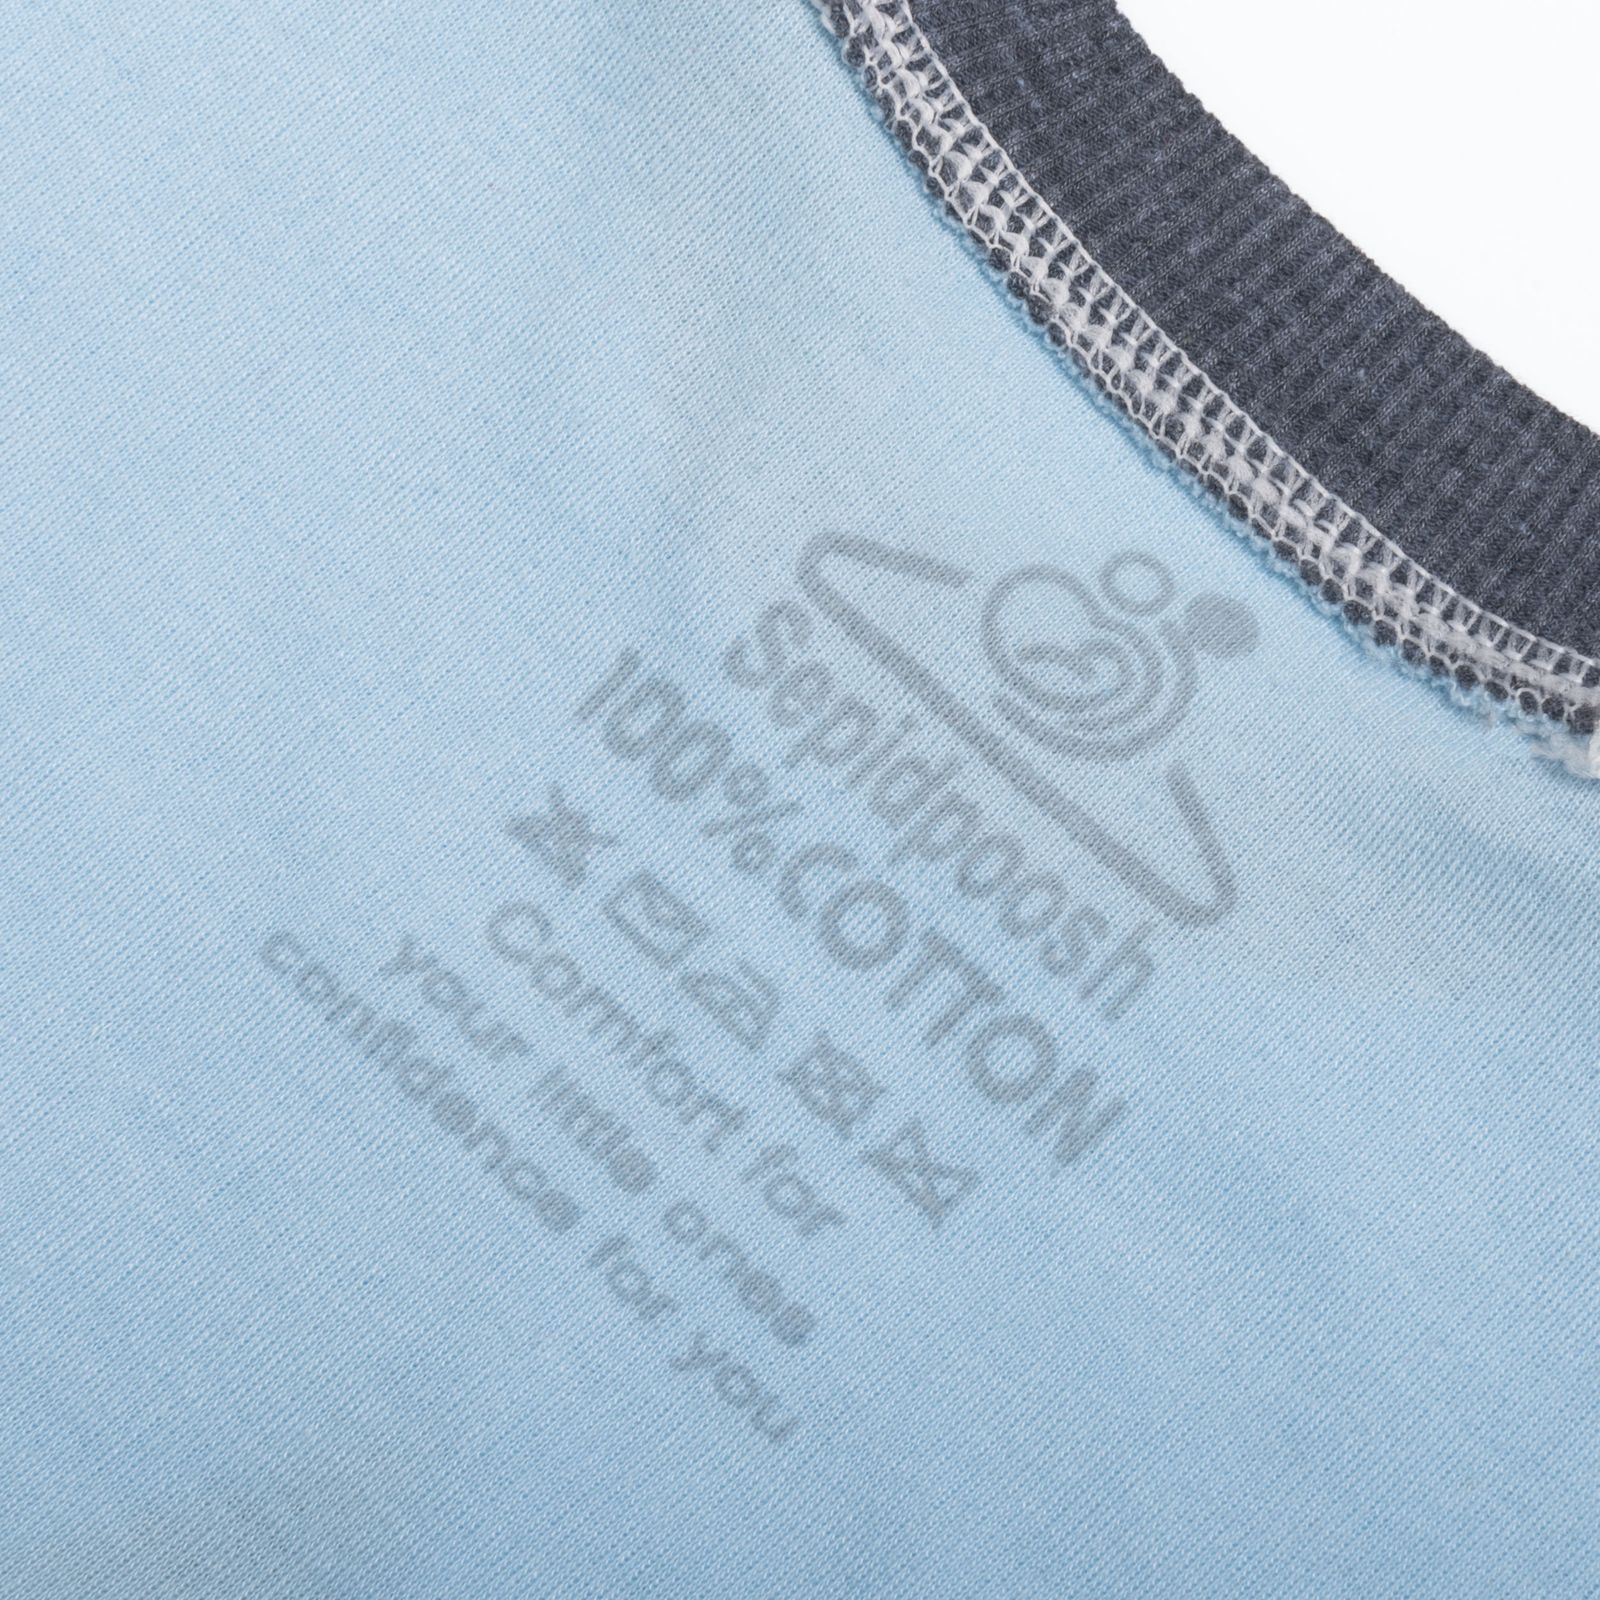 ست تی شرت آستین بلند و شلوار بچگانه سپیدپوش مدل Shark کد 1402521 -  - 3